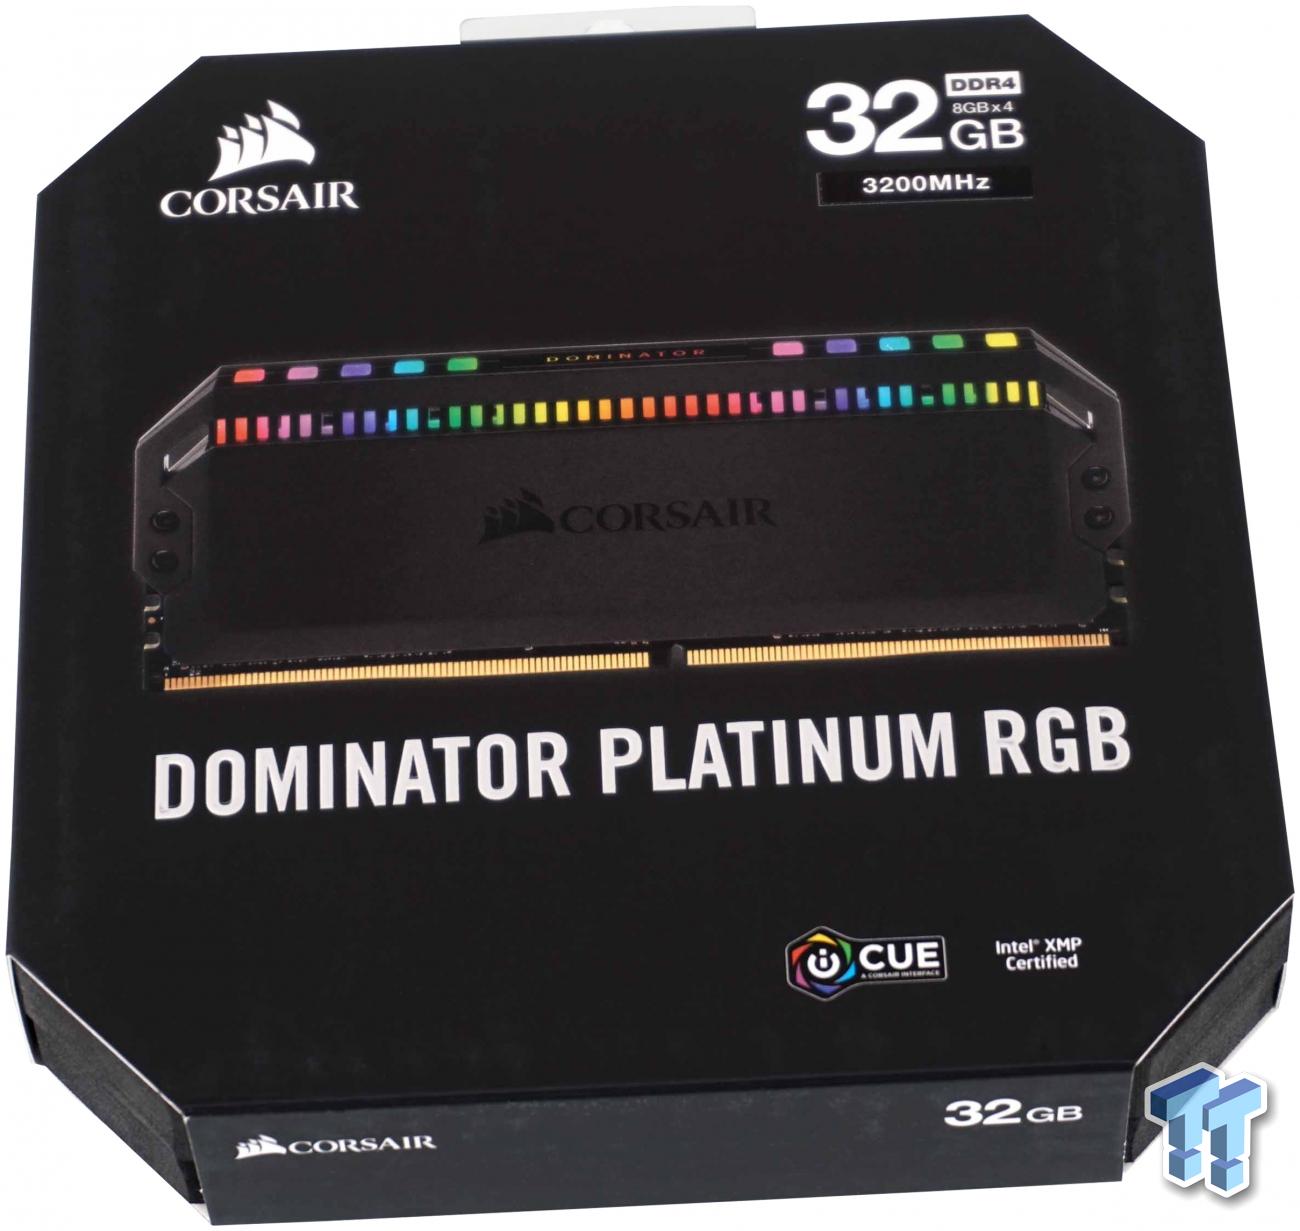 Tilbagekaldelse Korrespondent Bløde fødder Corsair Dominator Platinum RGB DDR4-3200 32GB Kit Review